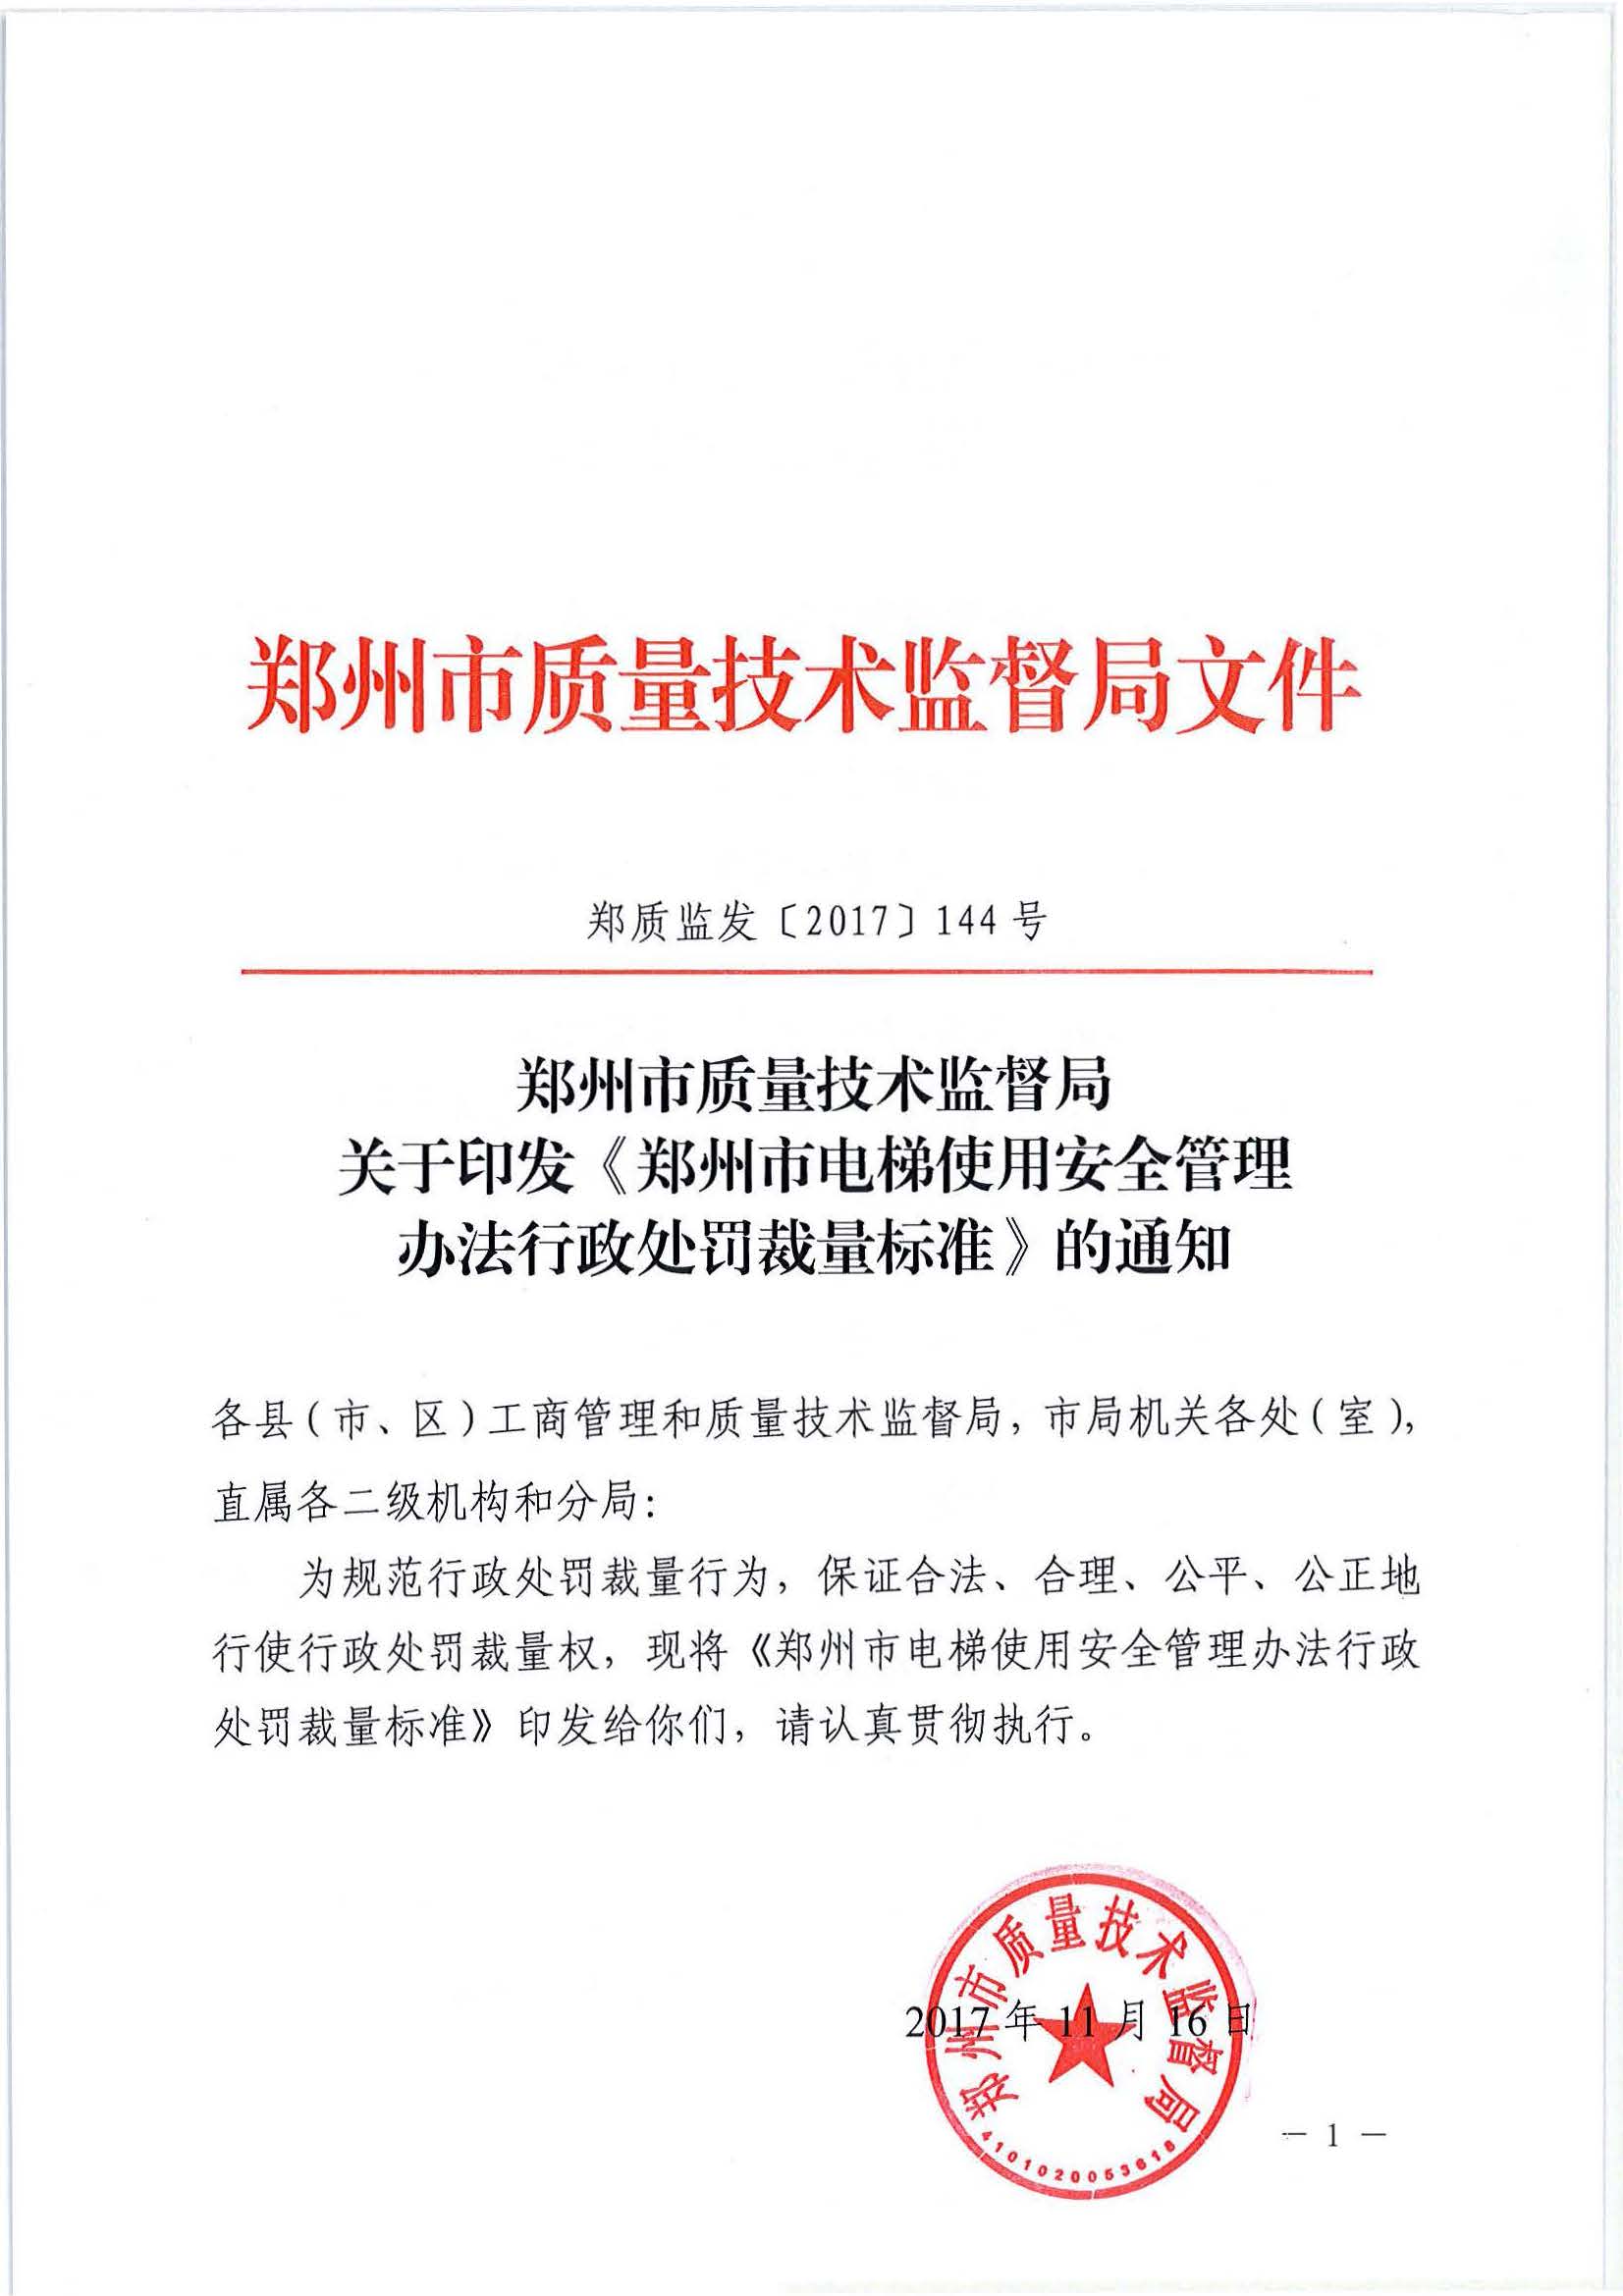 页面提取自－郑州市质量技术监督局关于印发《郑州市电梯使用安全管理 办法行政处罚裁量标准》的通知.jpg